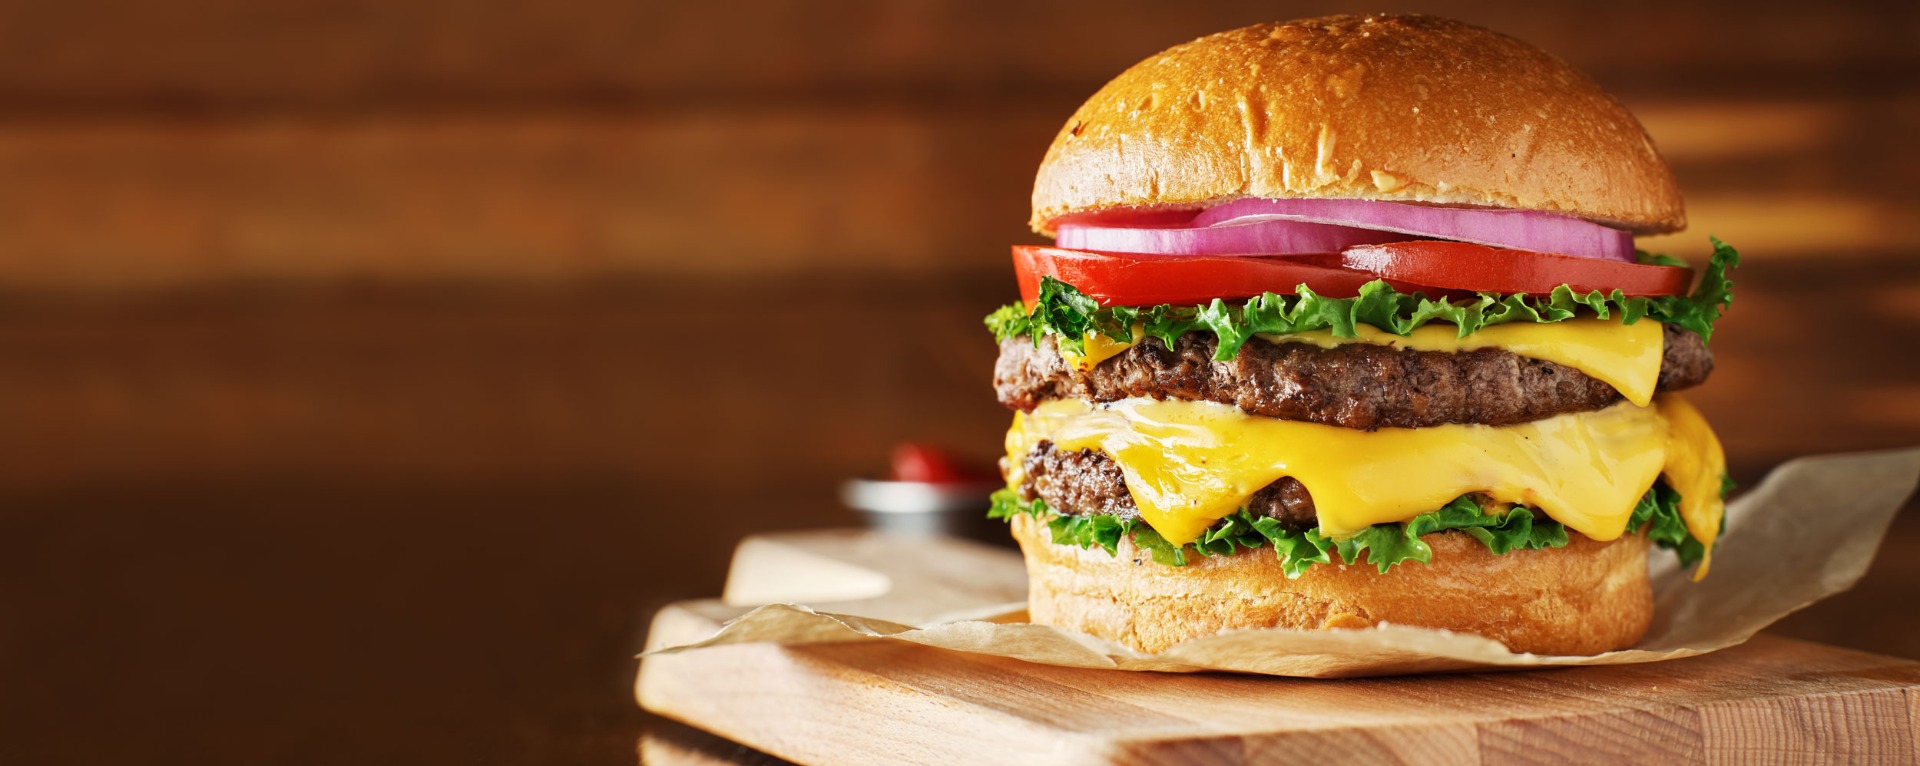 Prik en Tik - Wijnstreken - Foodpairing - Junkfood cheeseburger